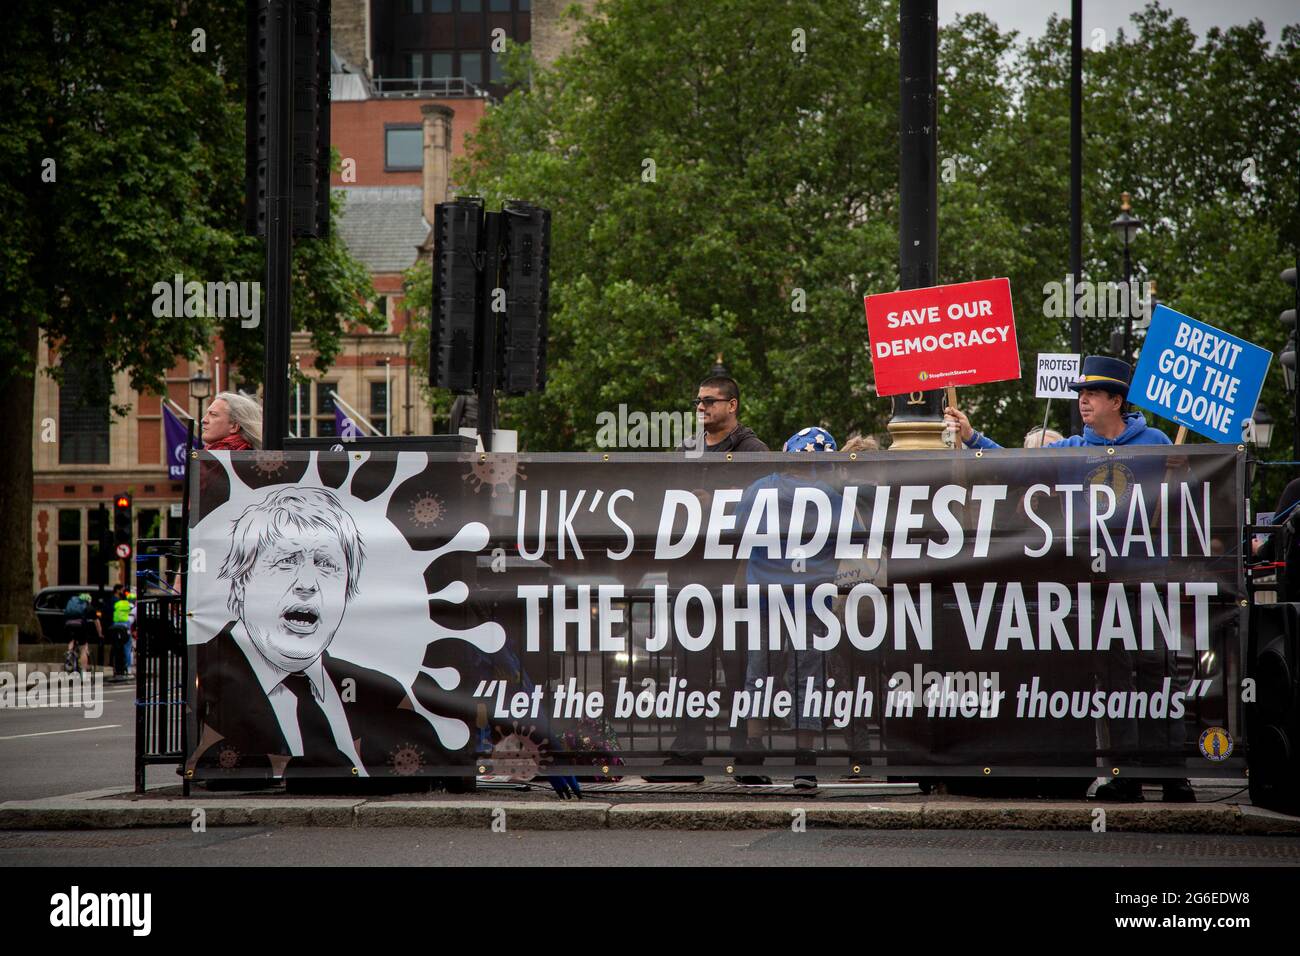 'La cepa más mortífera del Reino Unido - la variante Johnson' - Protesters del grupo SODEM Action liderada por el activista pro UE Steve Bray que realiza una protesta en Whiteh Foto de stock